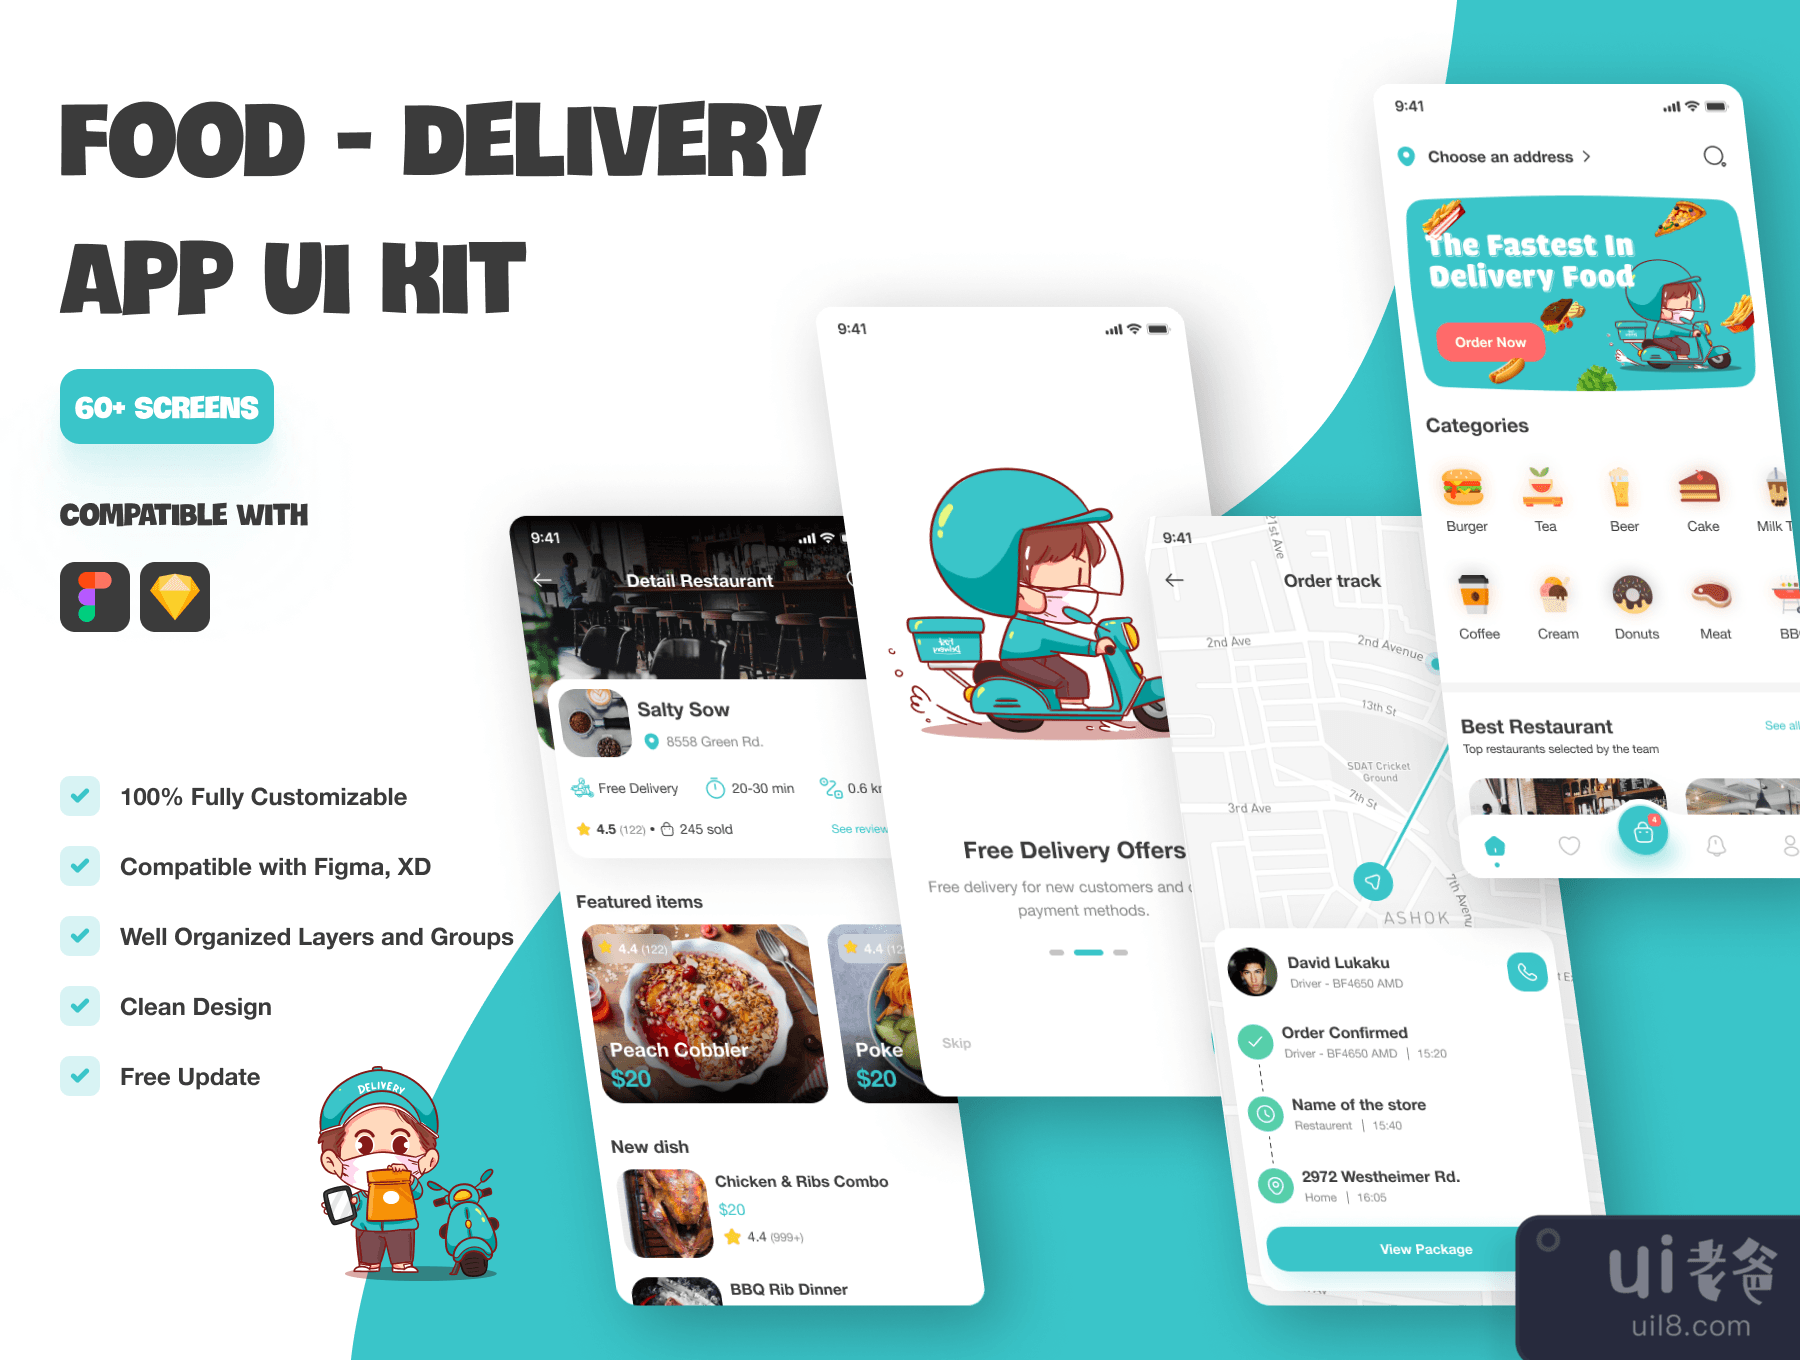 食品配送移动应用UI KIT (Food Delivery Mobile App UI KIT)插图